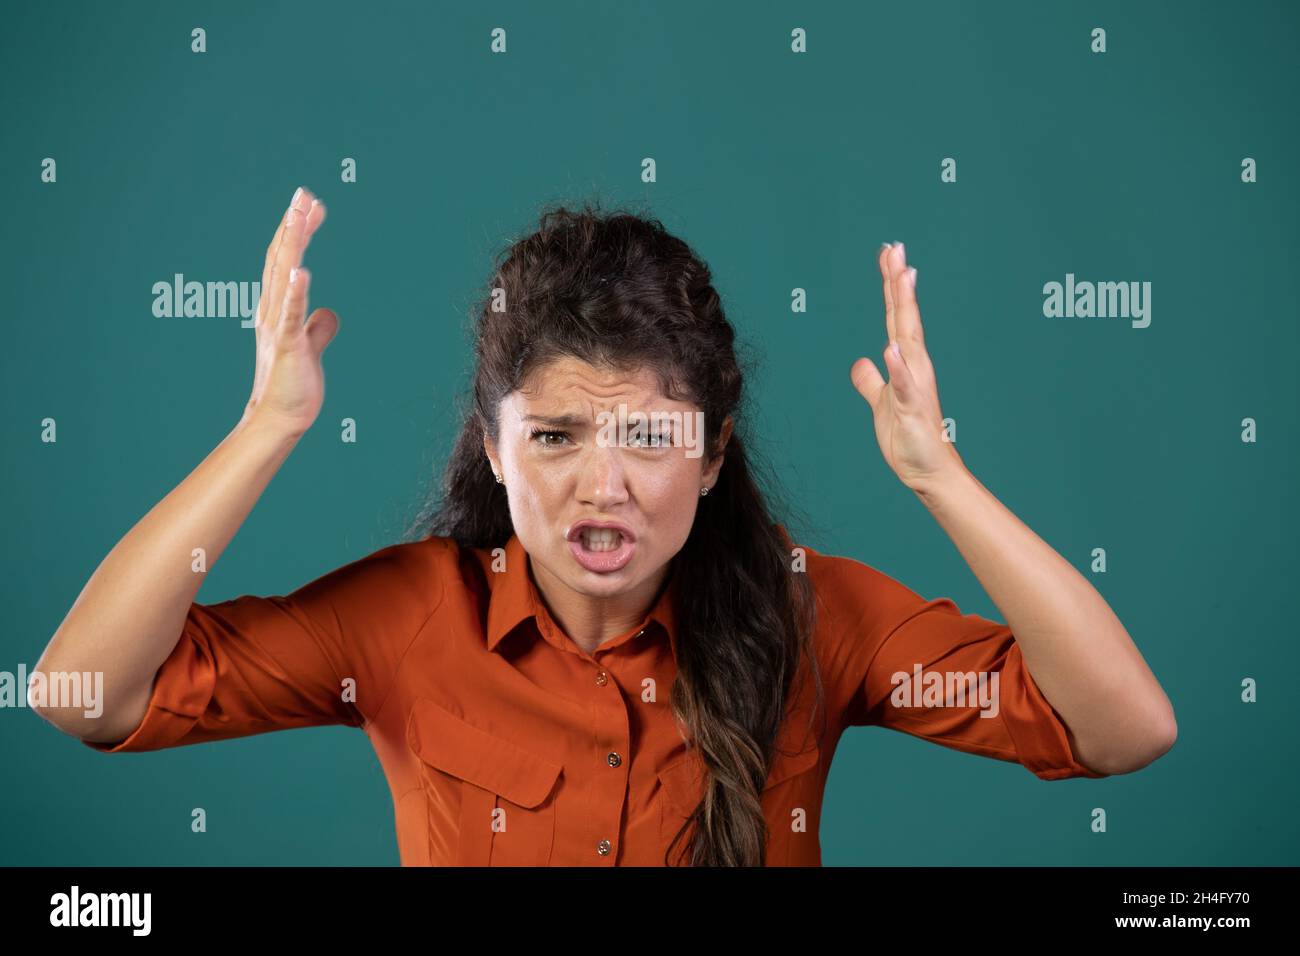 Ritratto di donna arrabbiata urlando, tenendo le mani in aria, su sfondo blu in studio Foto Stock